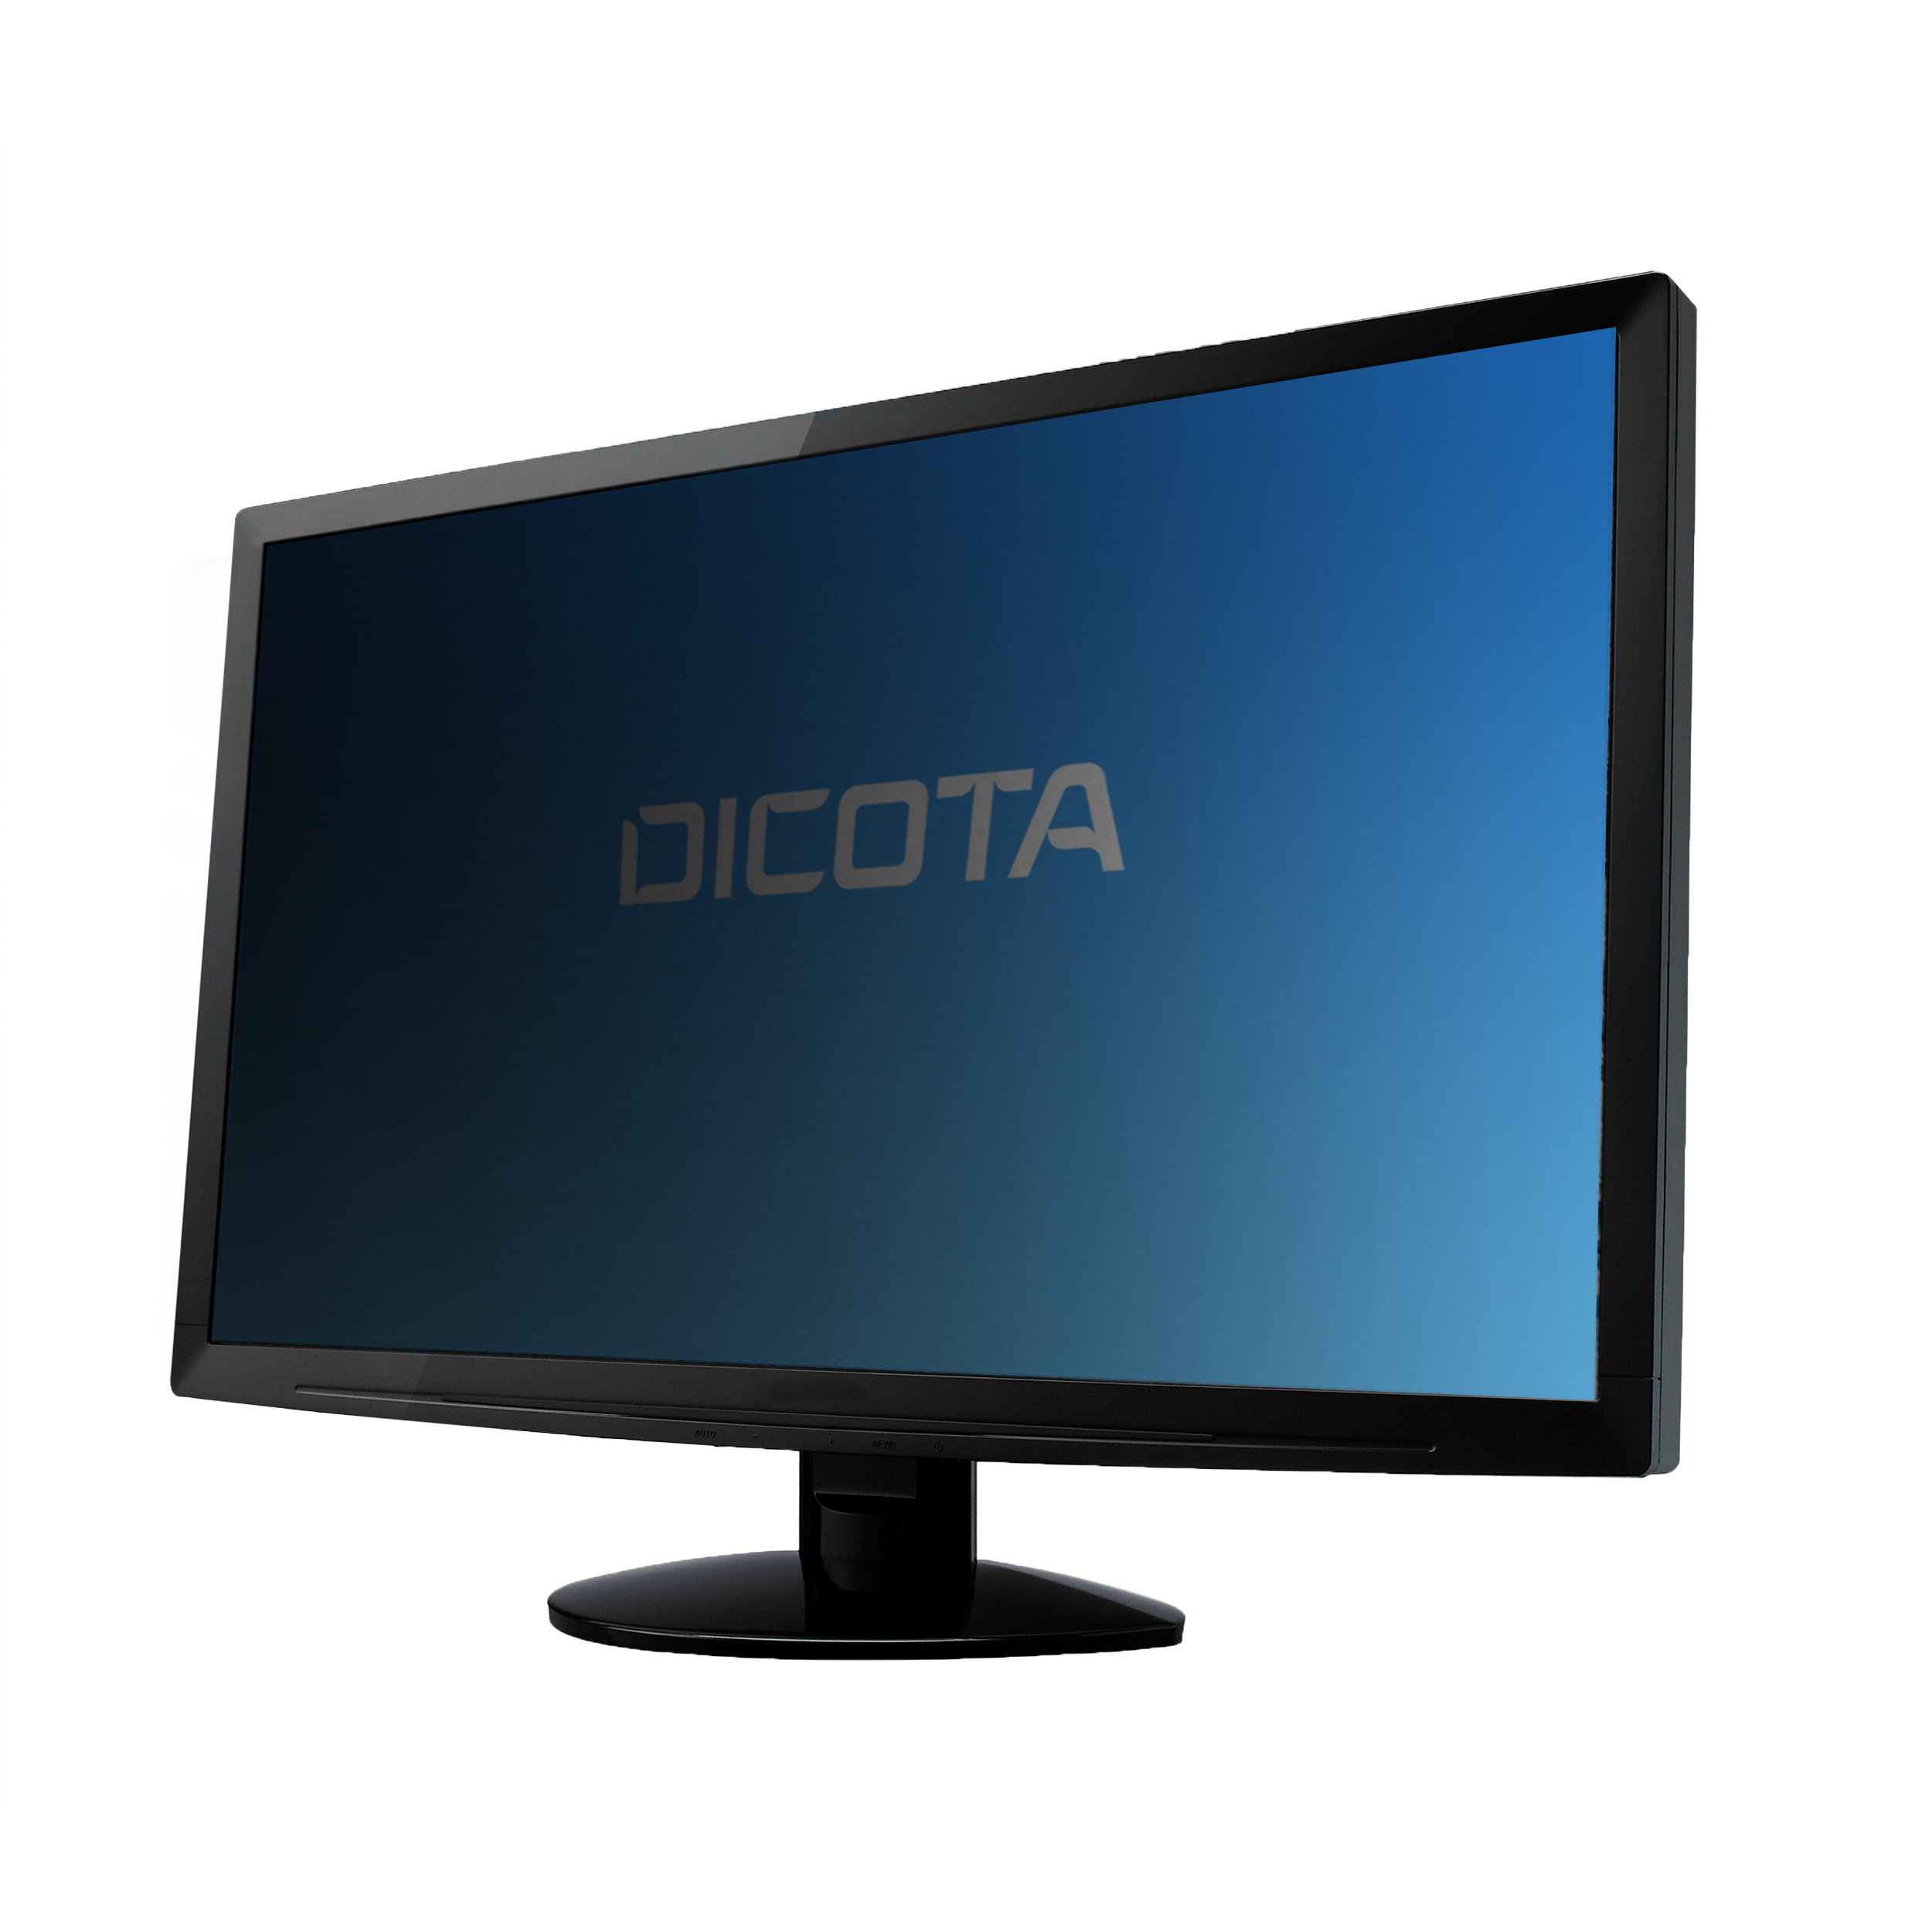 Dicota Blickschutzfilter für Bildschirme - 2-Wege - klebend - Schwarz - für Apple iMac (24 Zoll)